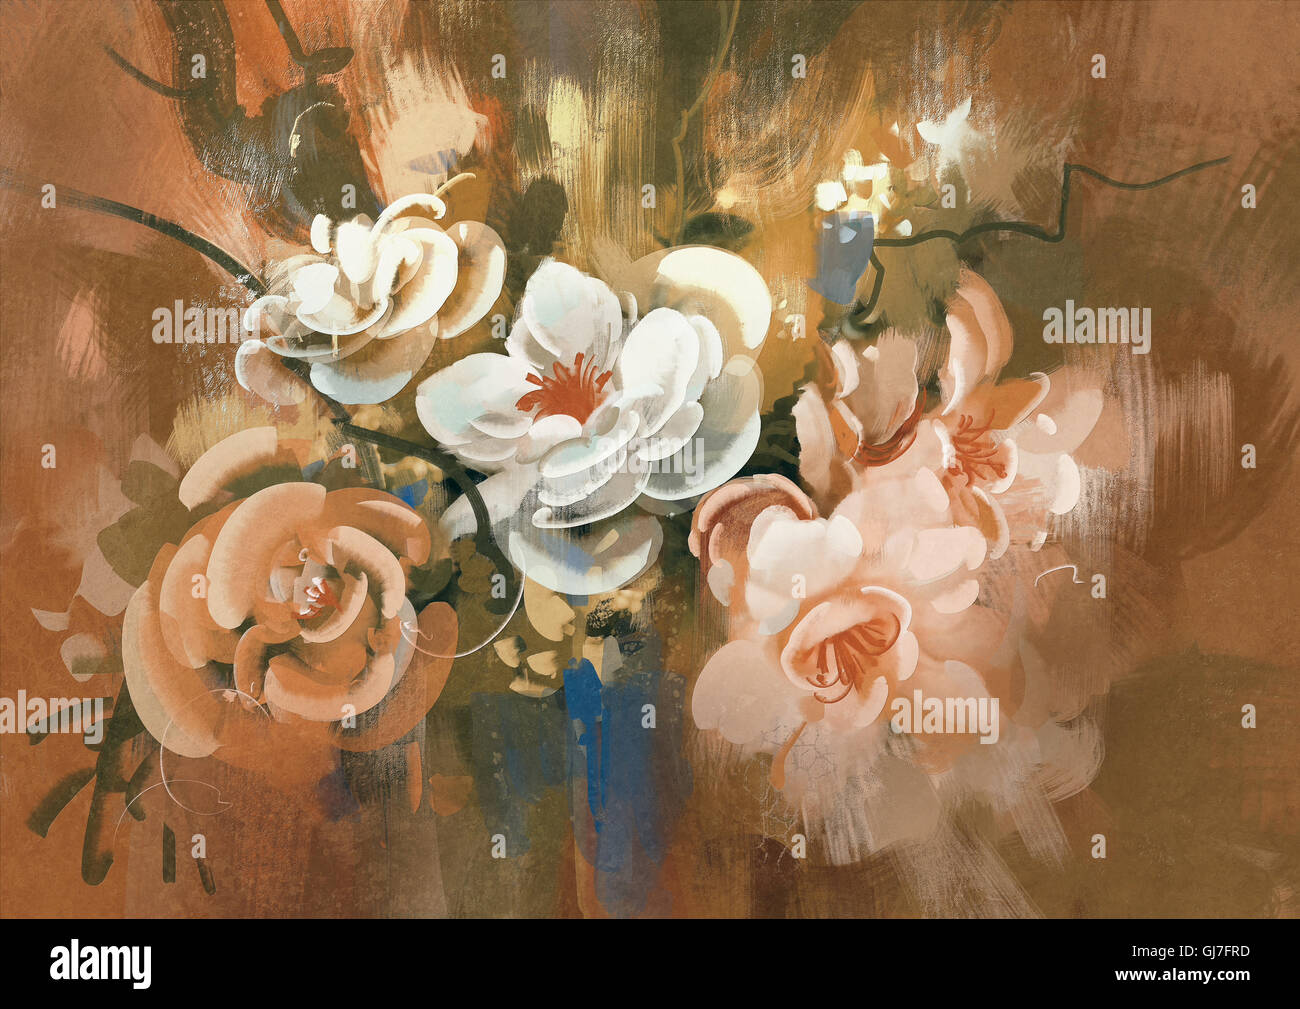 La pittura digitale di coloratissimi fiori astratti, illustrazione Foto Stock